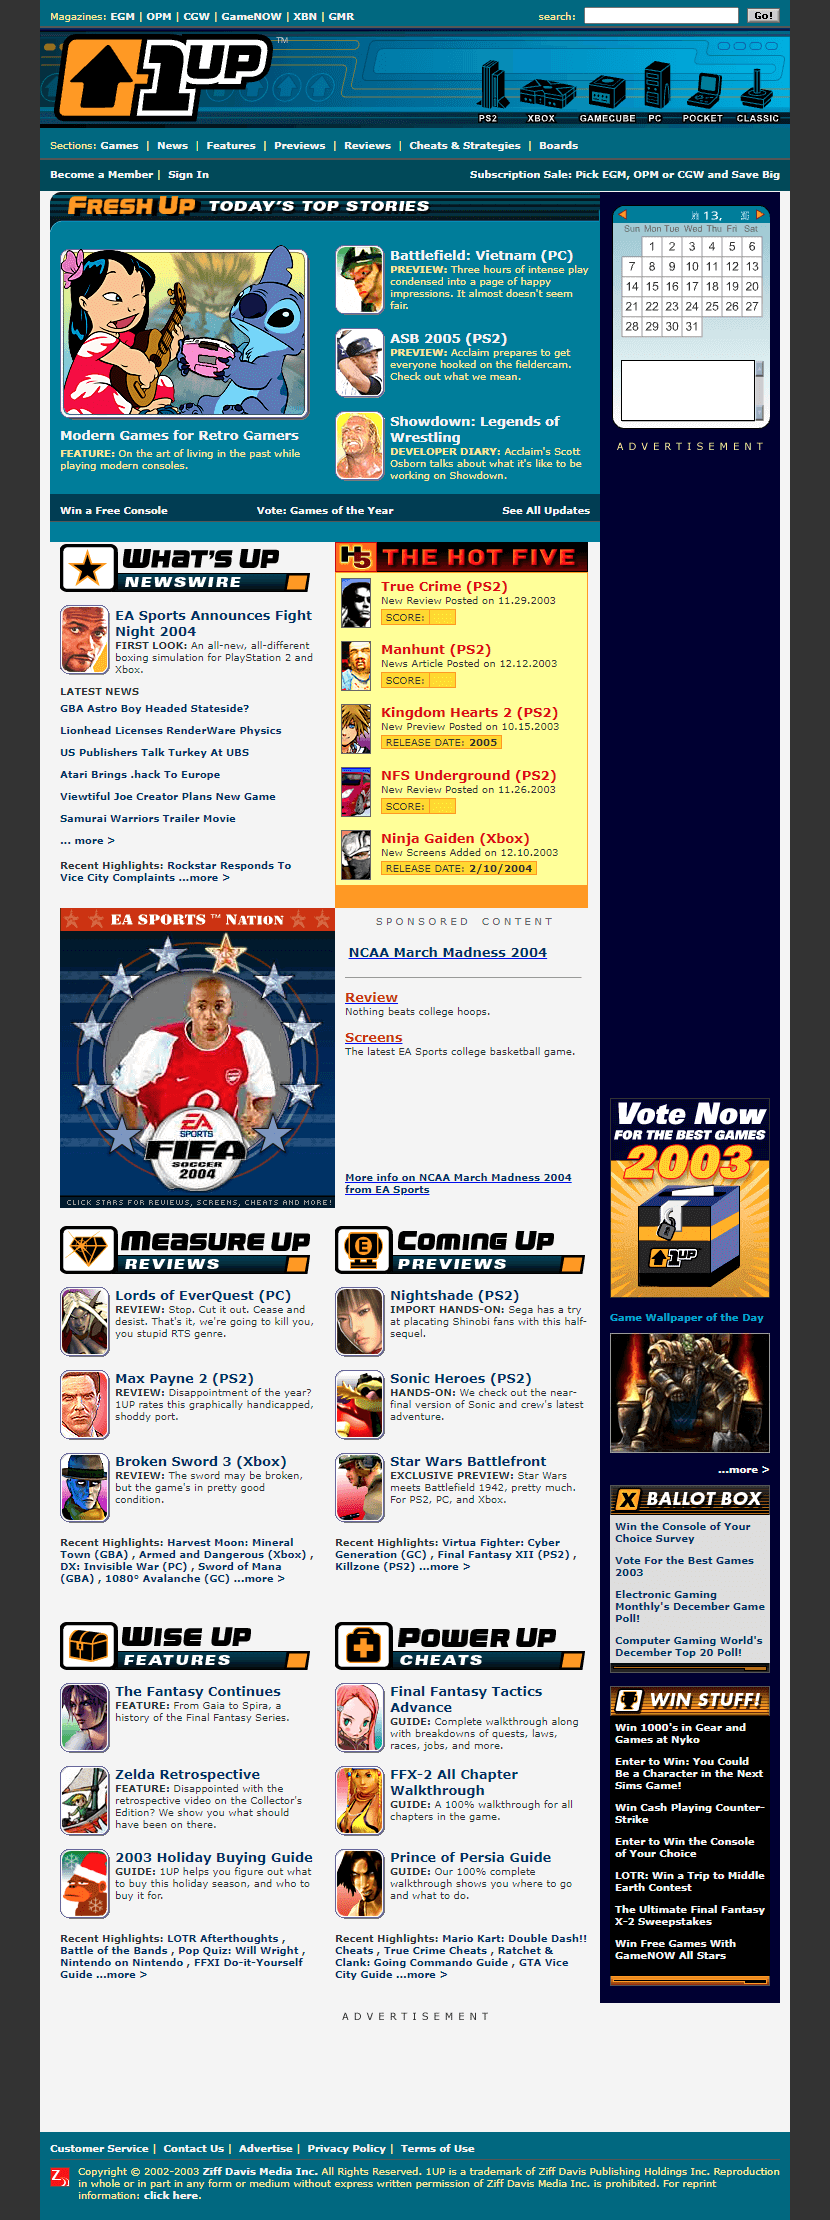 1UP website in 2003